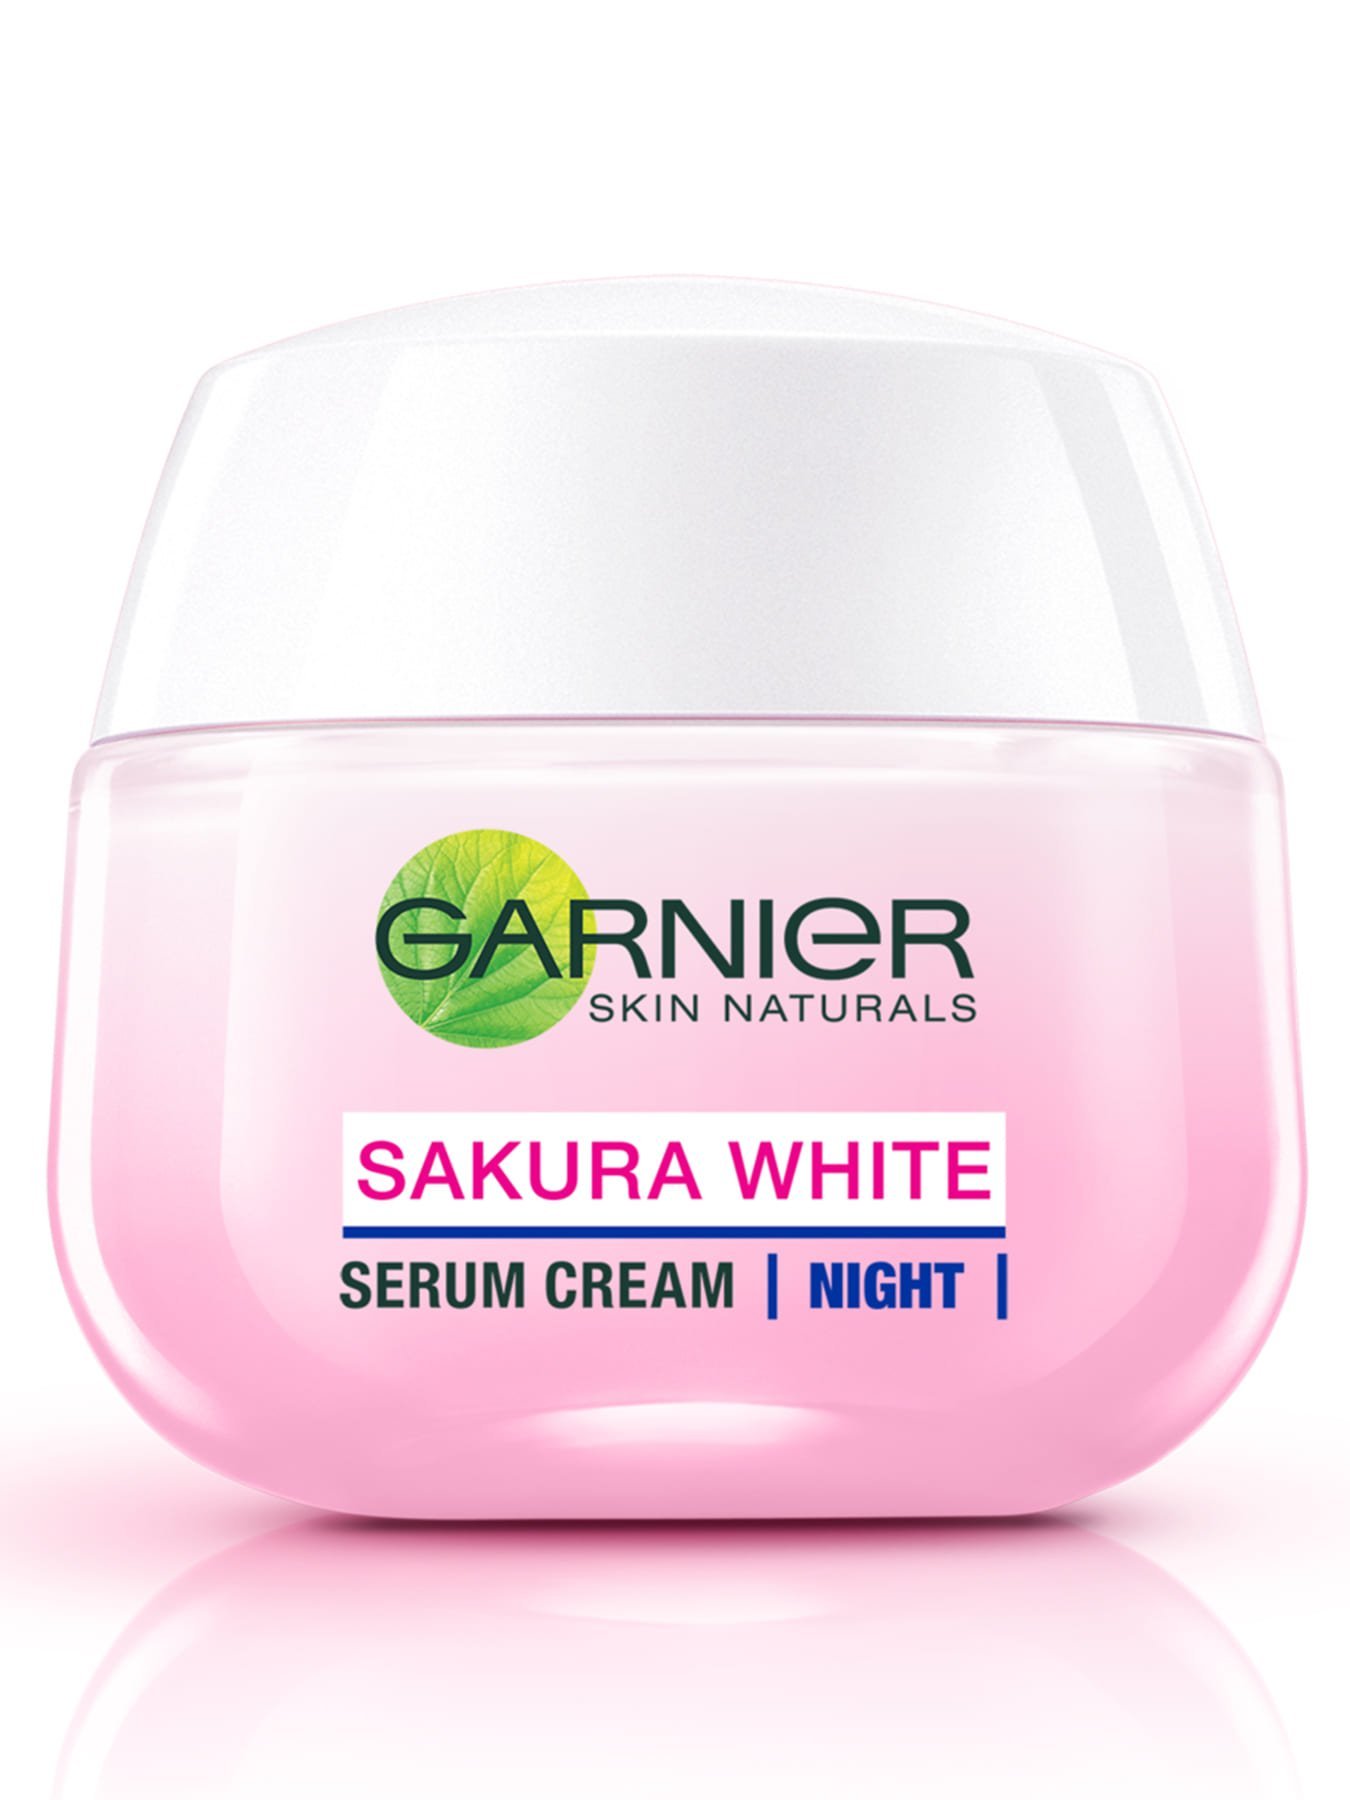 Sakura White Night Cream  20ml Krim Malam Garnier